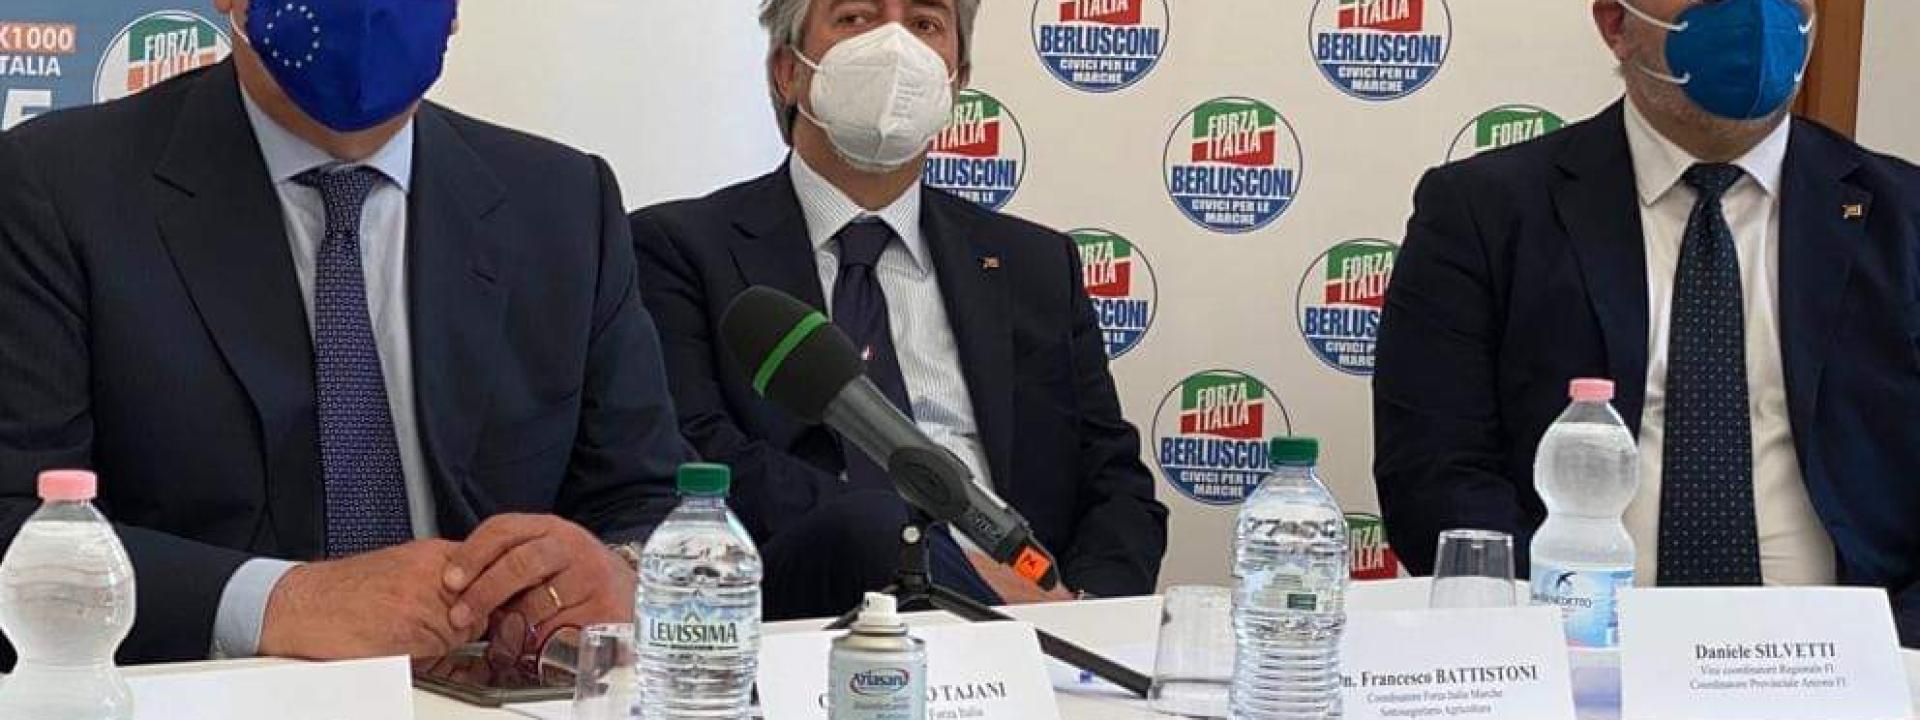 Marche - Al via in provincia di Macerata il tour elettorale di Forza Italia